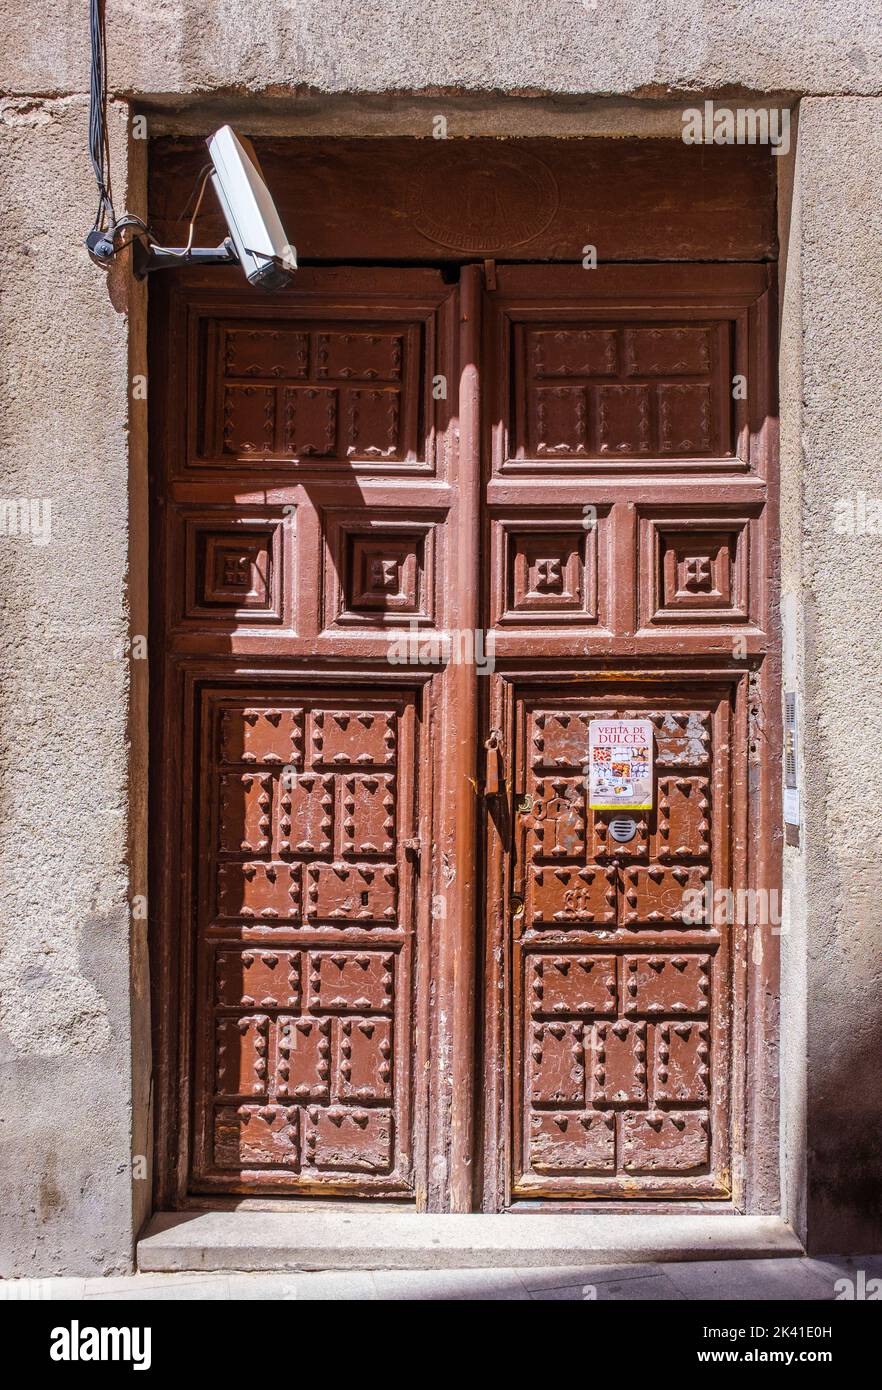 España, Madrid. Signo de Venta de Dulces. Las monjas venderán galletas o pasteles en esta puerta bajo petición. Foto de stock